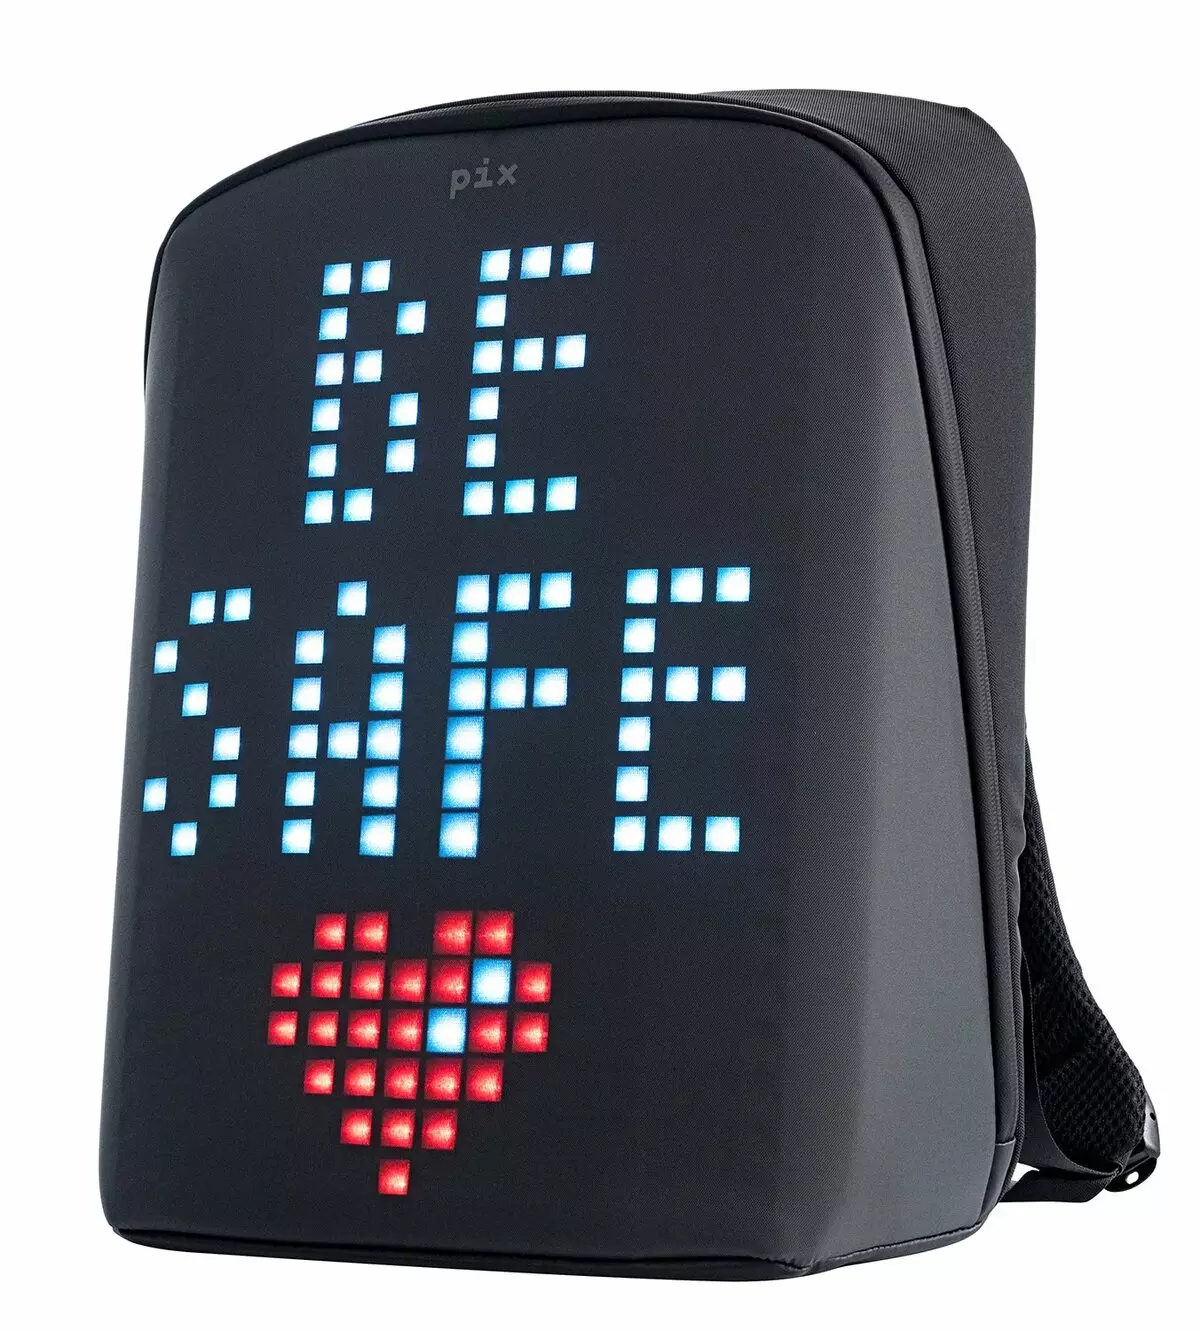 Skærm Rygsække: Oversigt over lysende digitale rygsække med LED Display bagfra. Sådan forbinder du den 